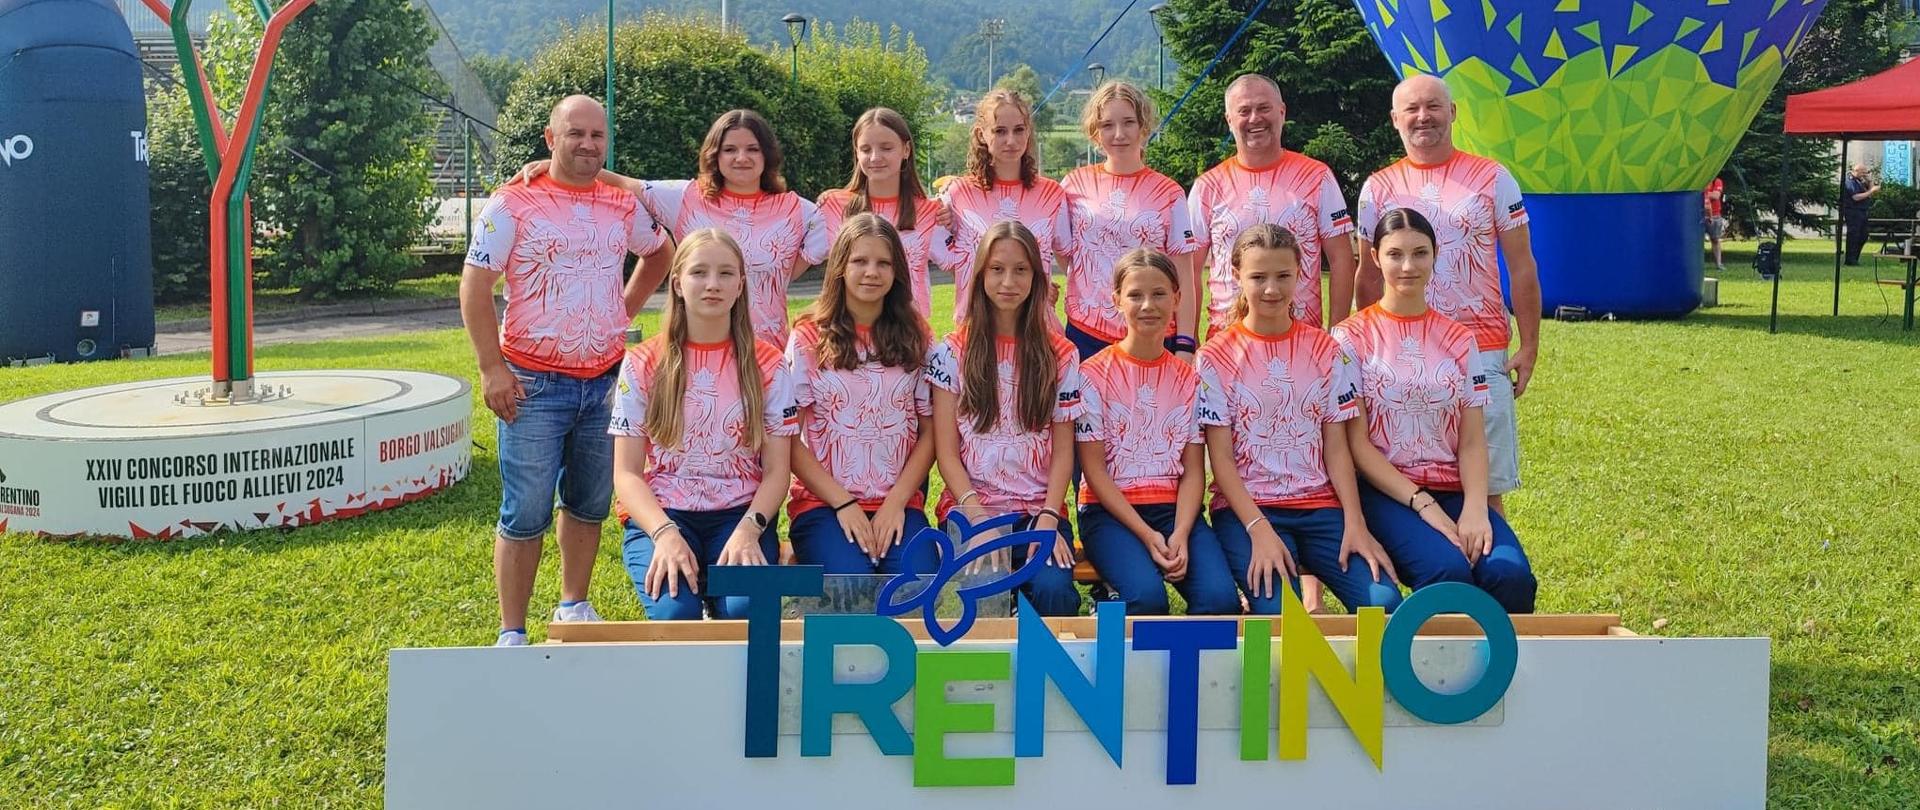 Grupa dziewcząt i opiekunów na tle gór z przodu napis Trentino